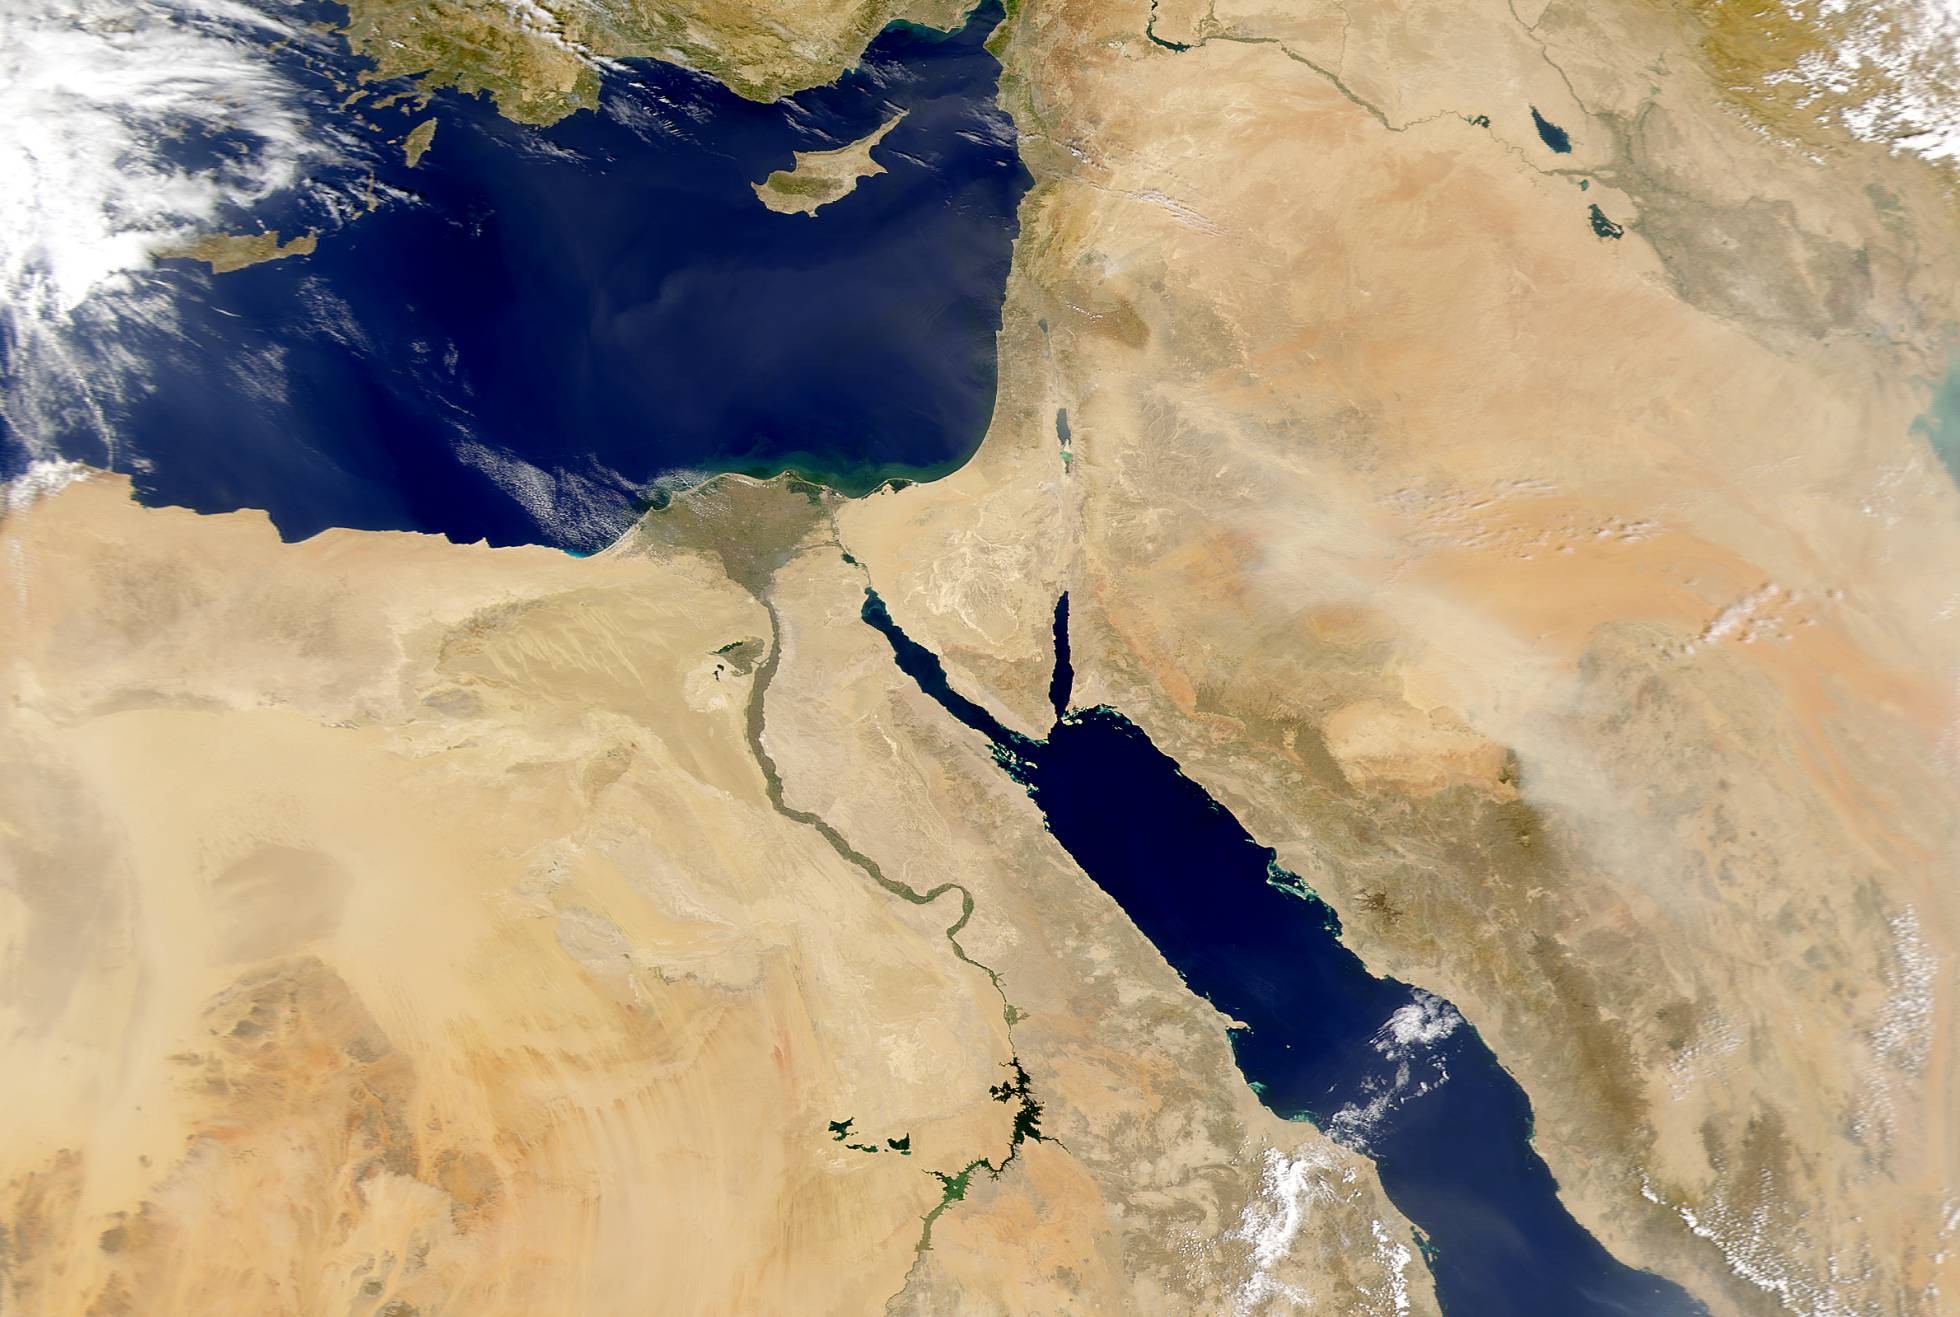 O rio Nilo era a base da sociedade egípcia (Foto: JEFF SCHMALTZ/NASA GSFC)